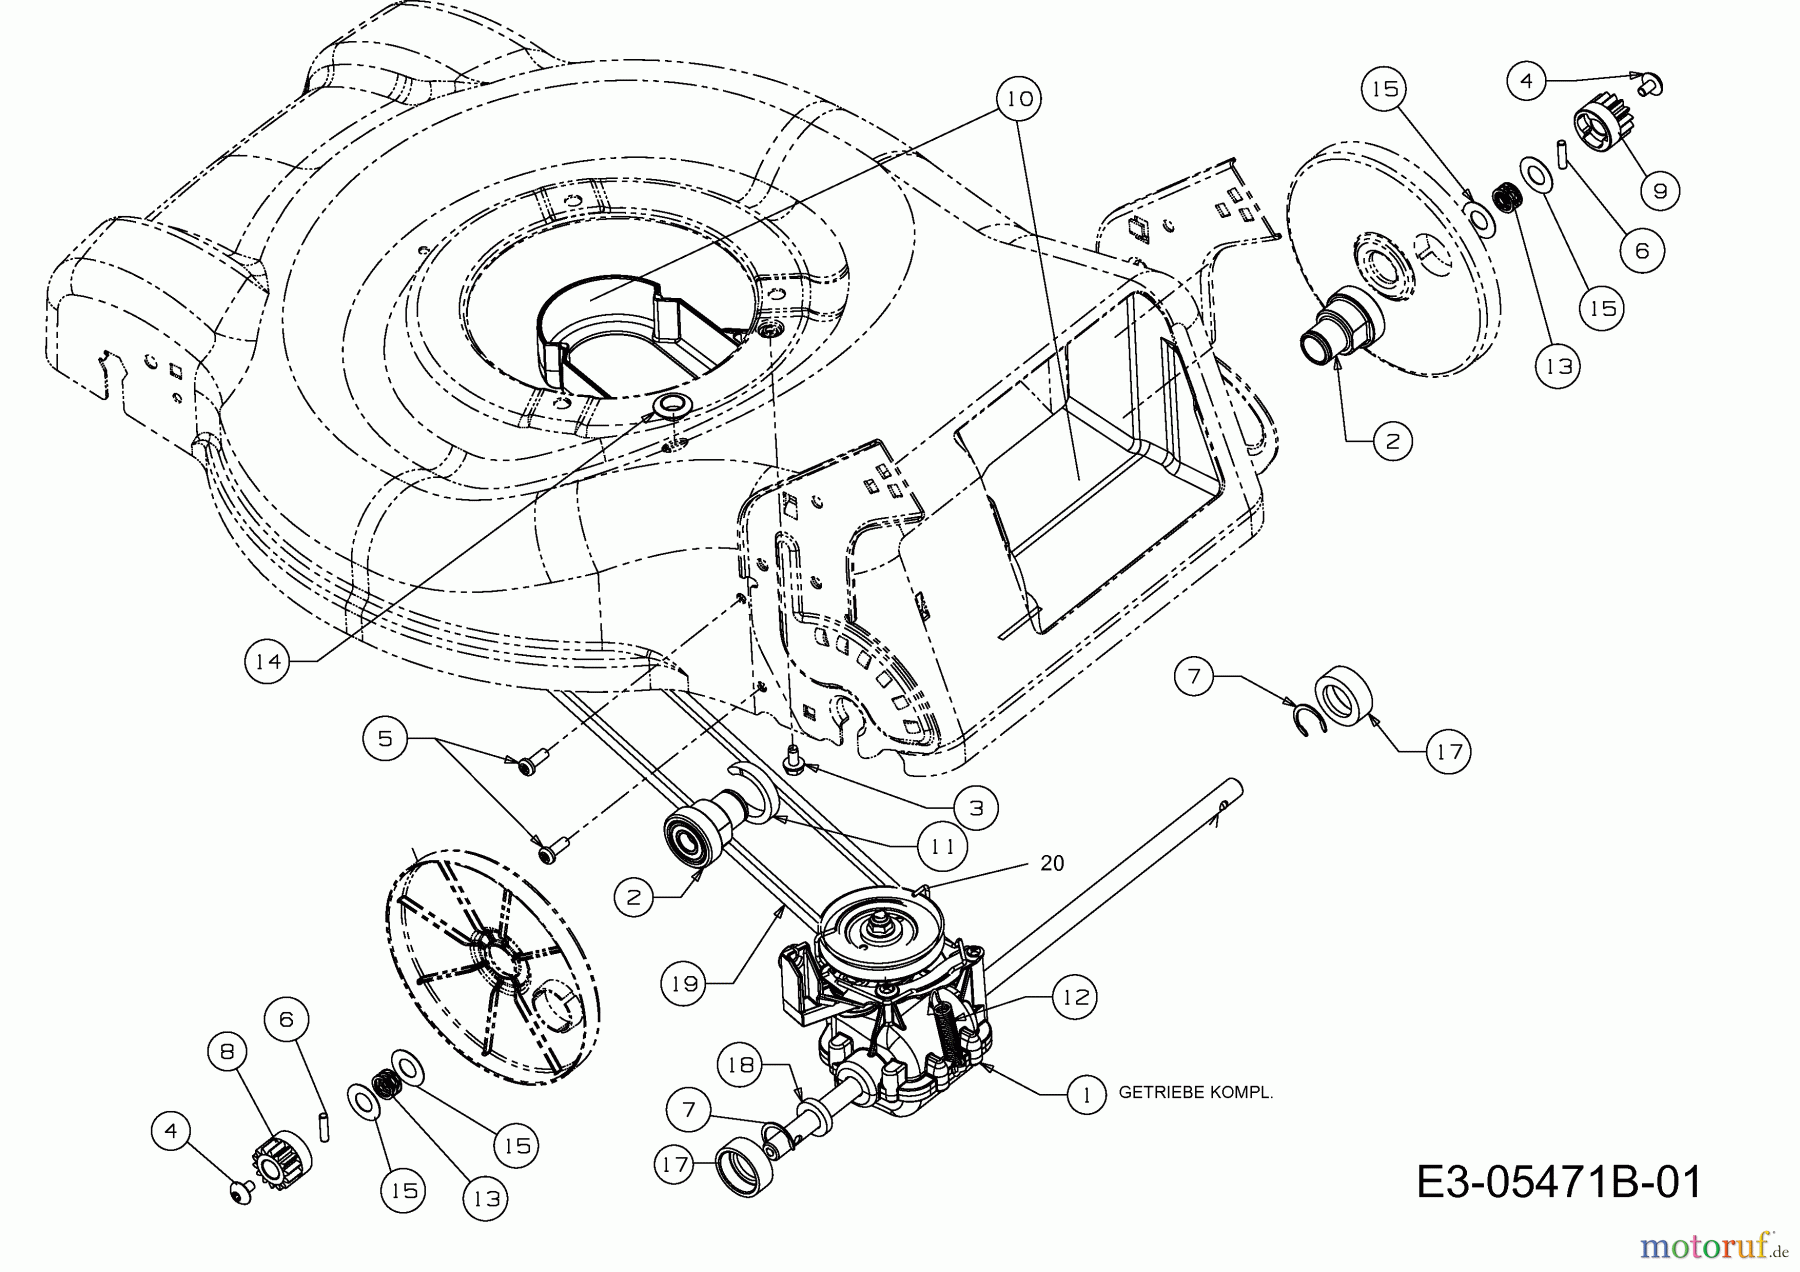  Wolf-Garten Motormäher mit Antrieb Ambition 46 AB 12A-J54H650  (2013) Getriebe